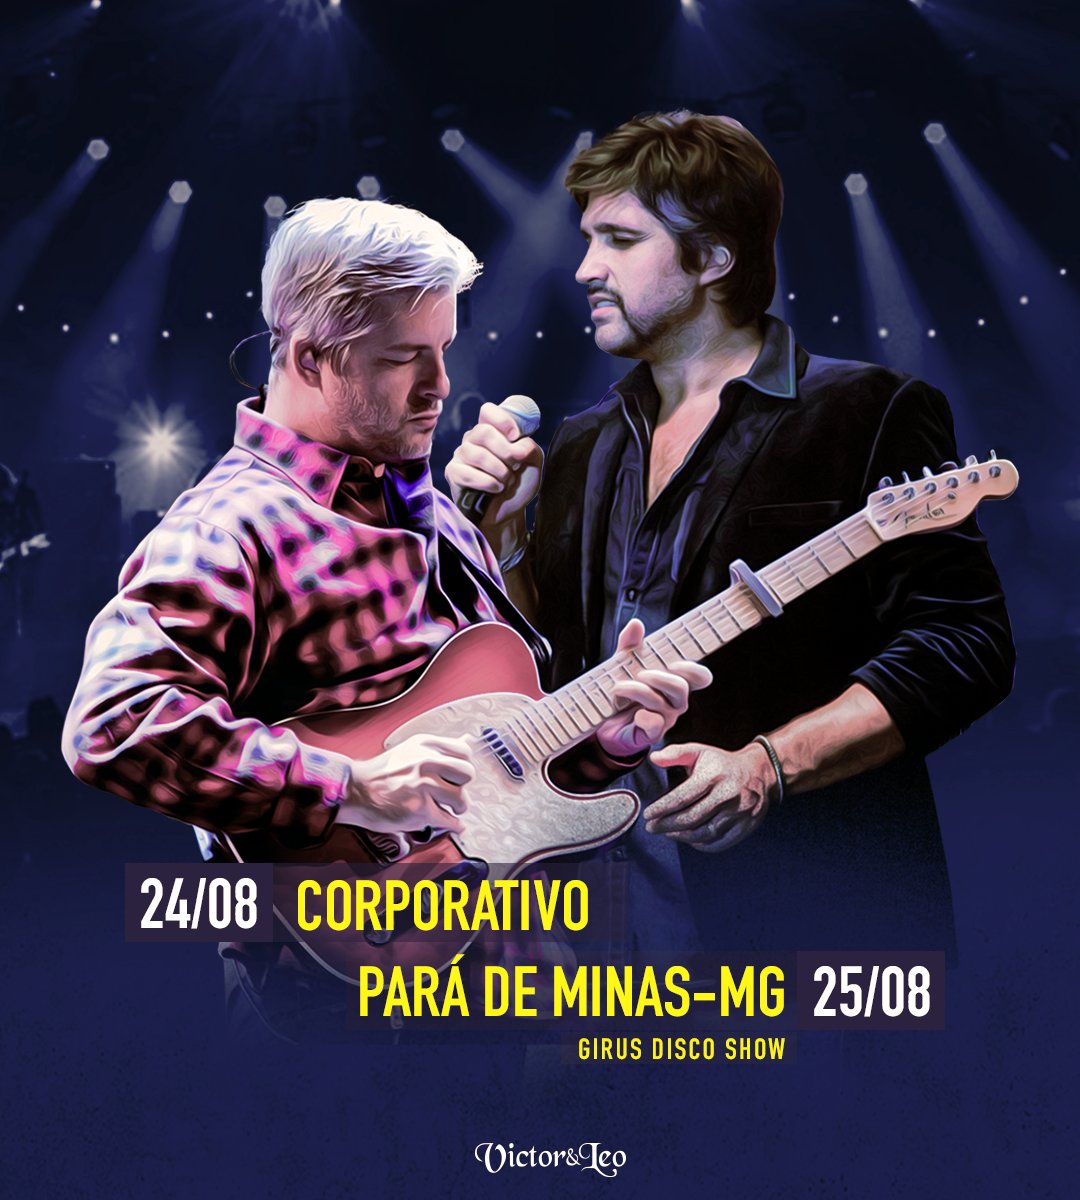 Sábado, dia 25, tem show em Pará de Minas/MG, na @girusoficial! Ingressos: bit.ly/2MrxEzH #VictorELeo #ParáDeMinas